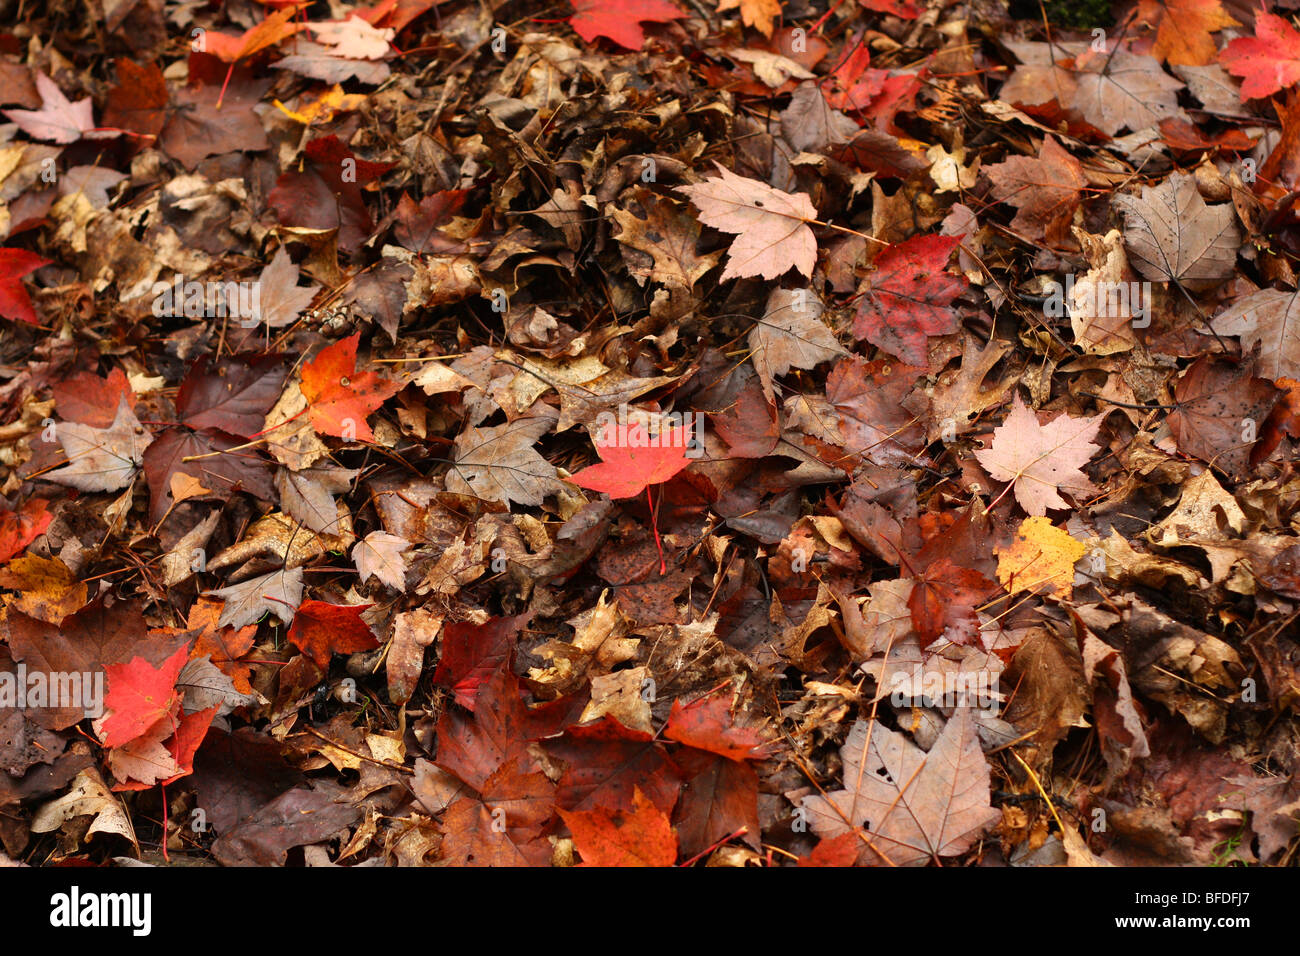 Herbst Blätter schöne Farben Ahorn Blatt Herbst Laub Wald herbstlich rot gelb braun Harke Rechen Stockfoto